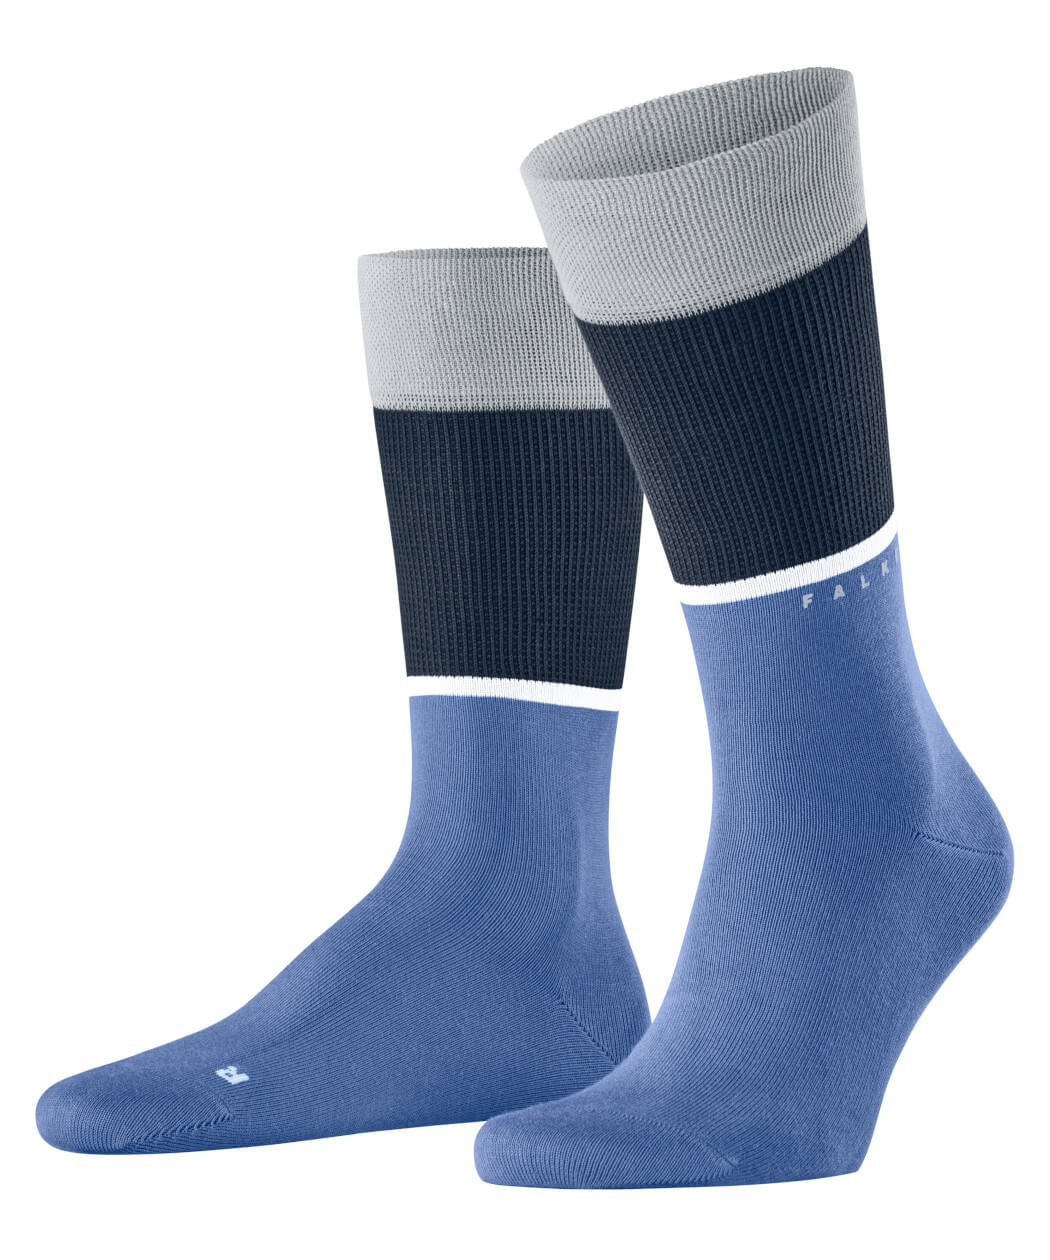 Falke Unlimited Unisex Socken